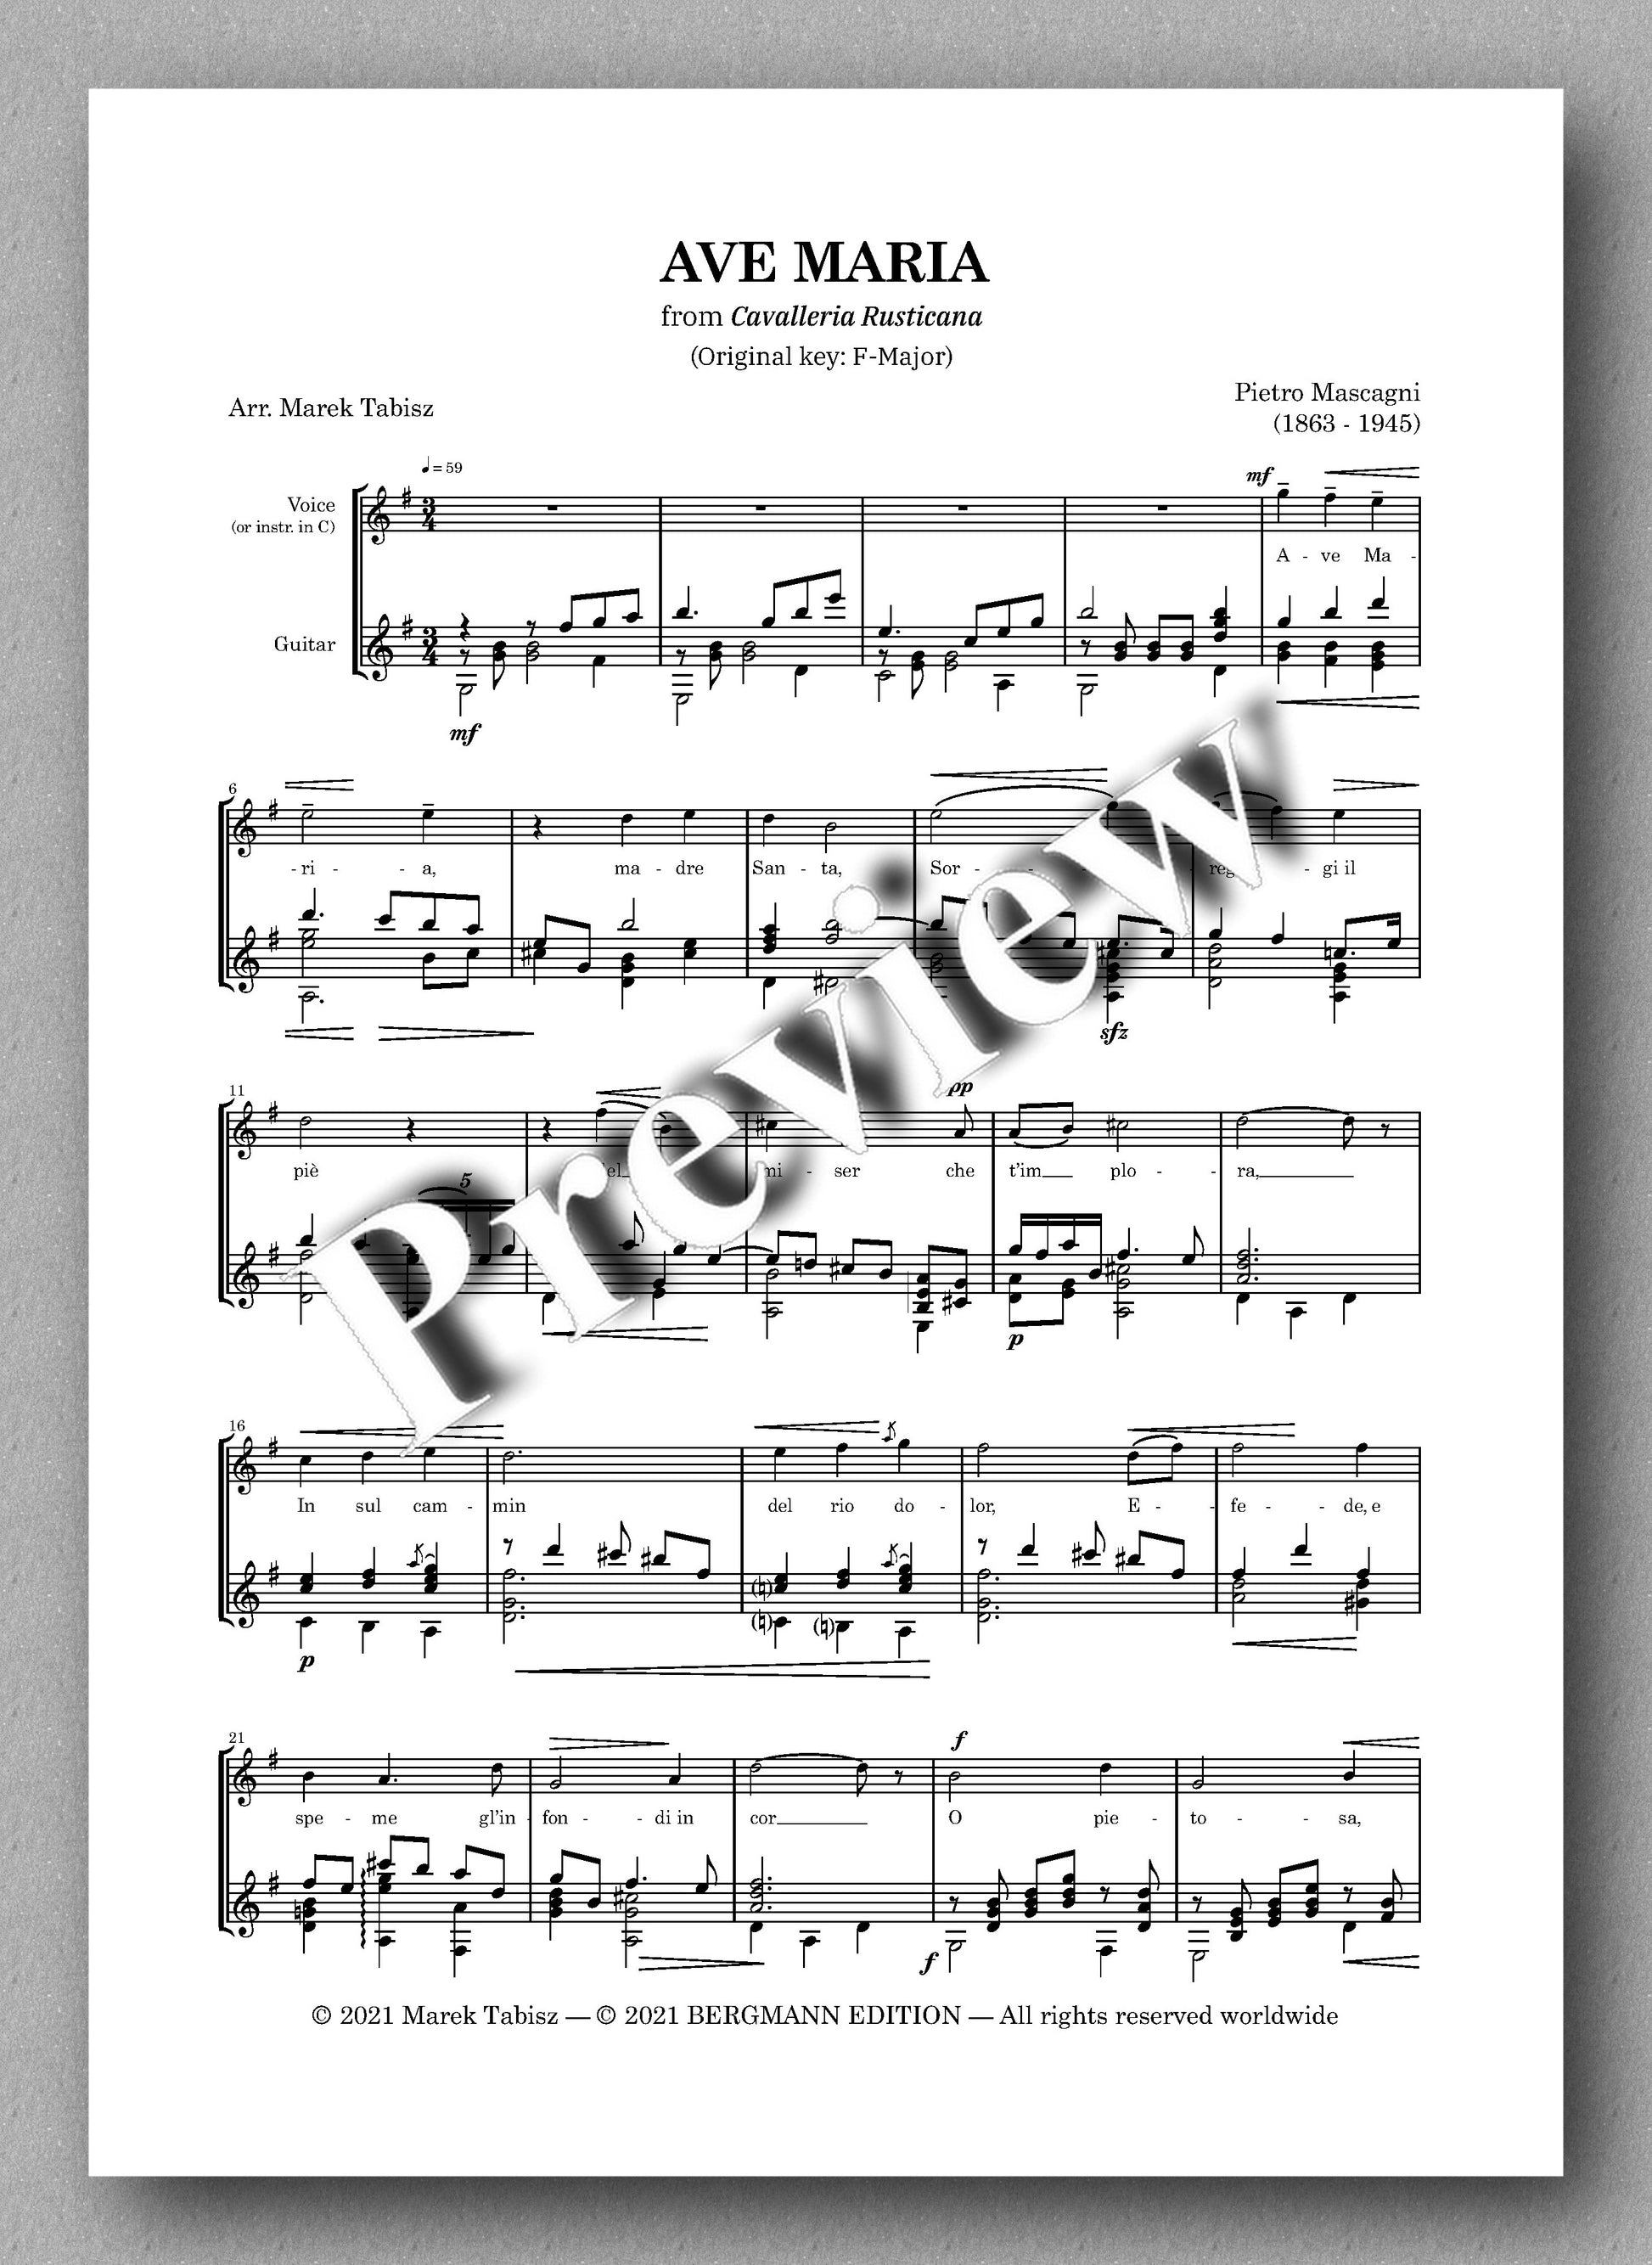 Mascagni-Tabisz, Ave Maria, Book 3 - music score